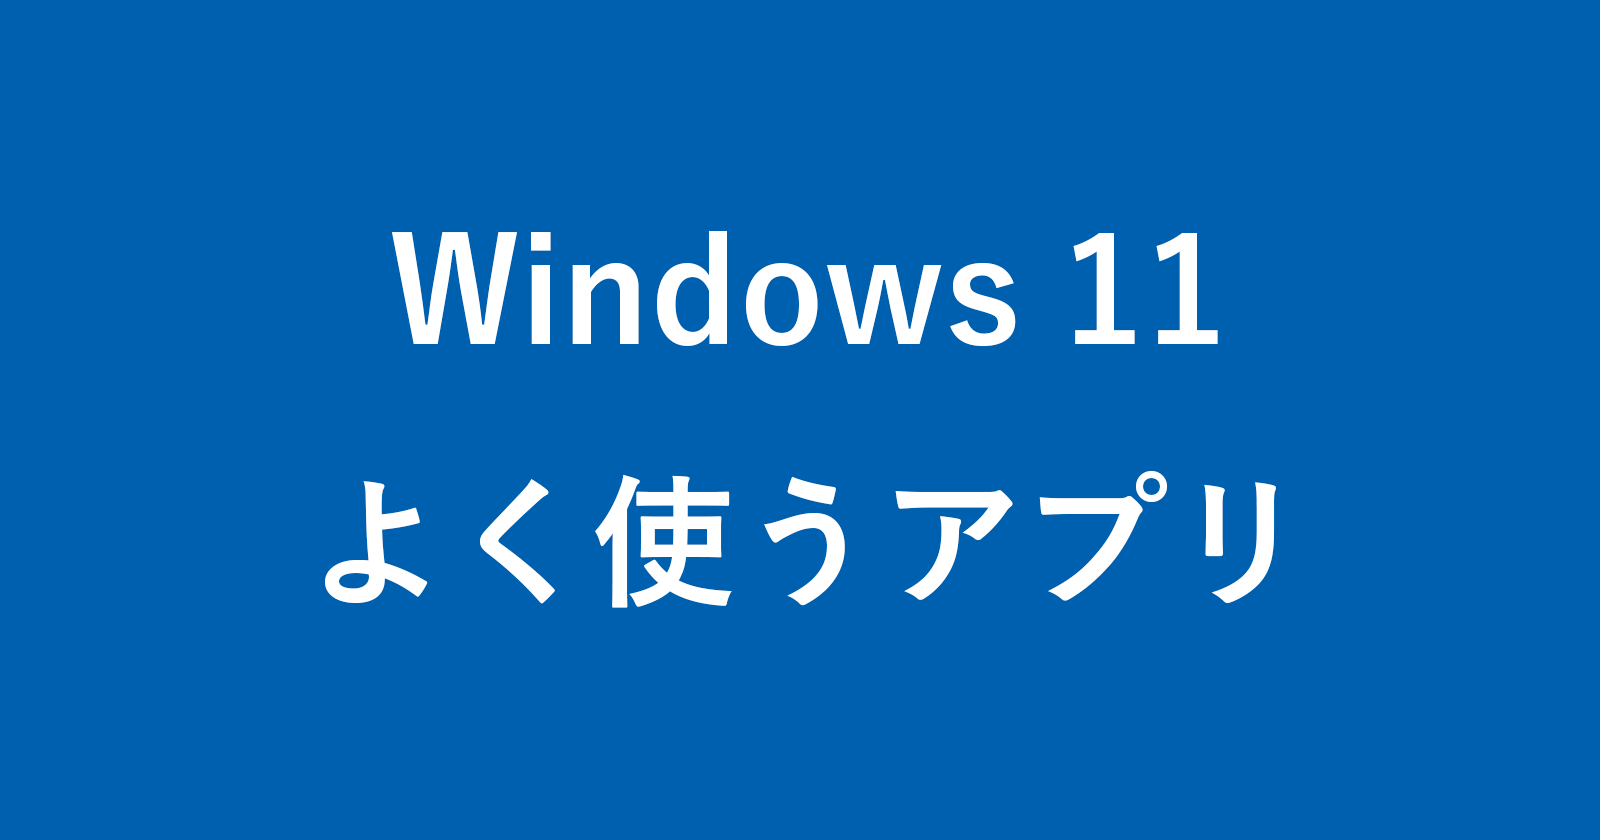 windows 11 most used app